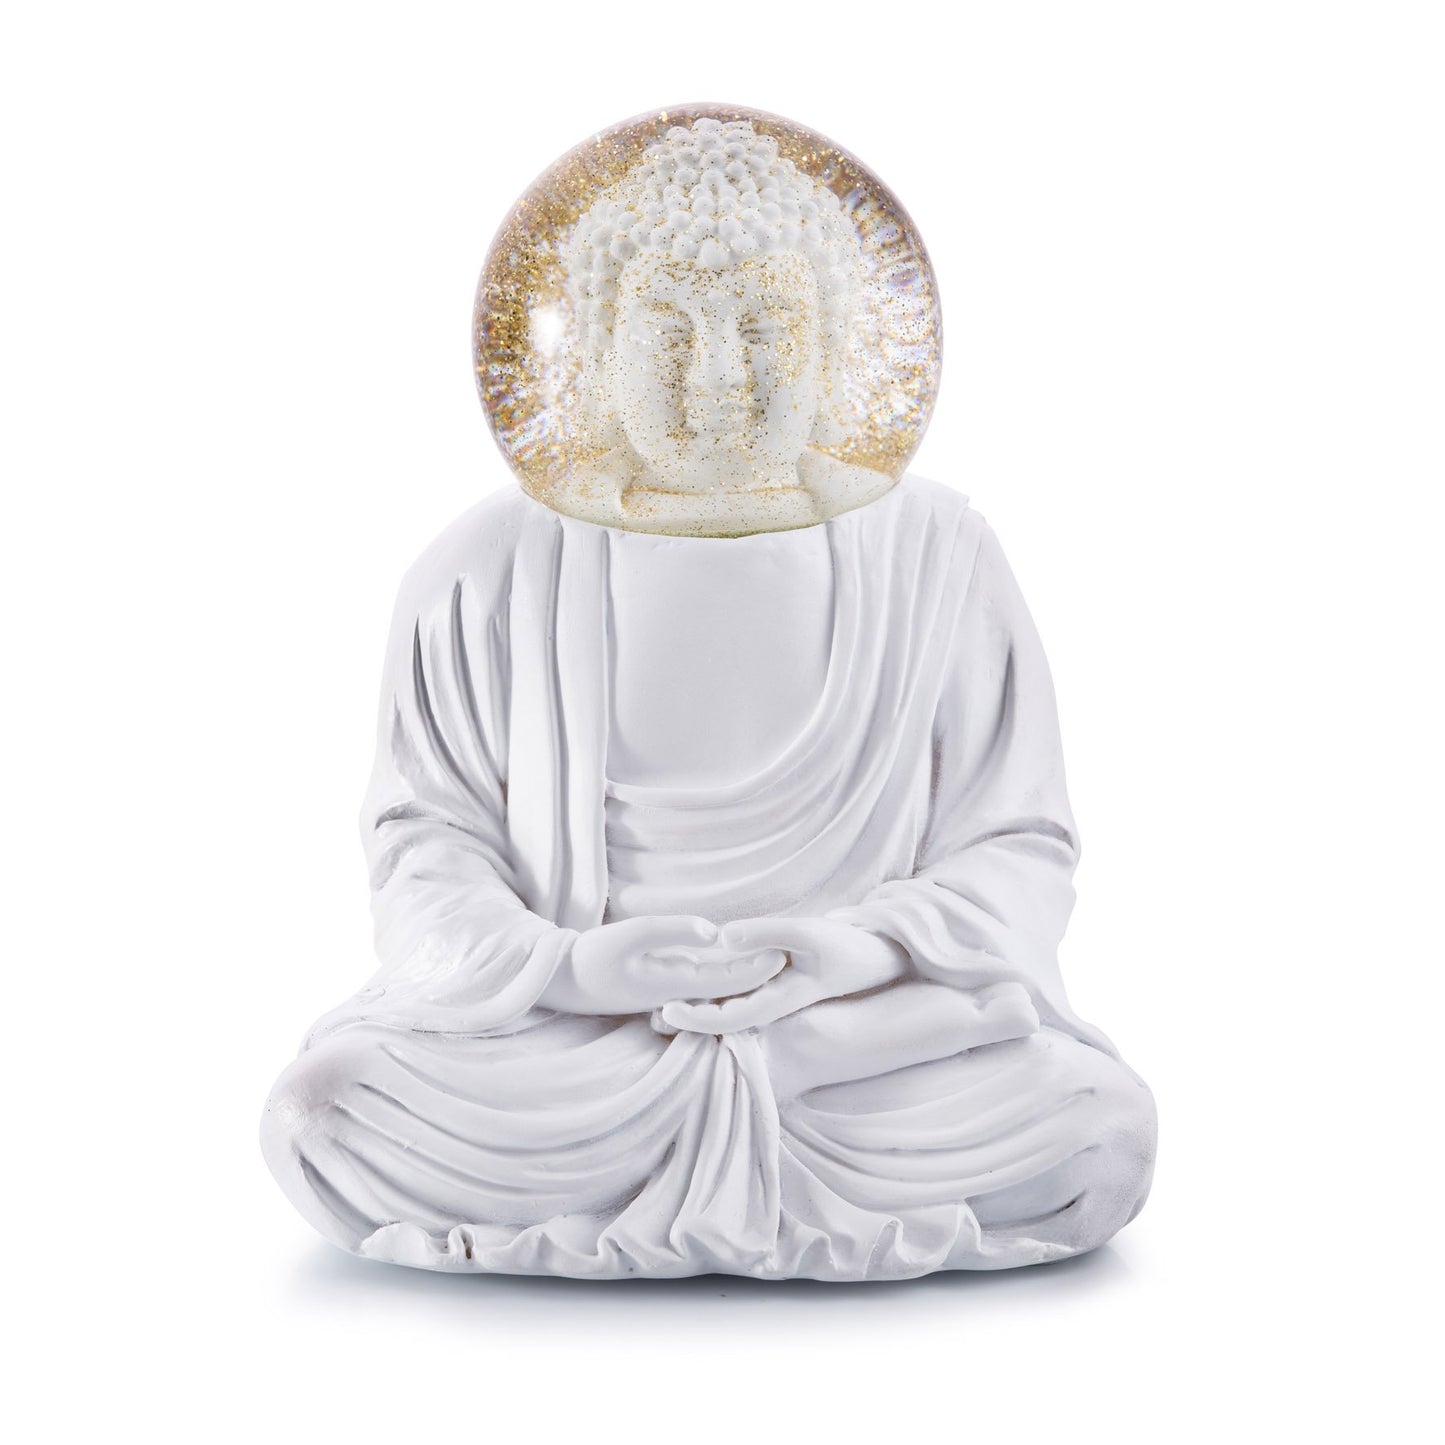 
                  
                    Summerglobe Der weiße Buddha
                  
                